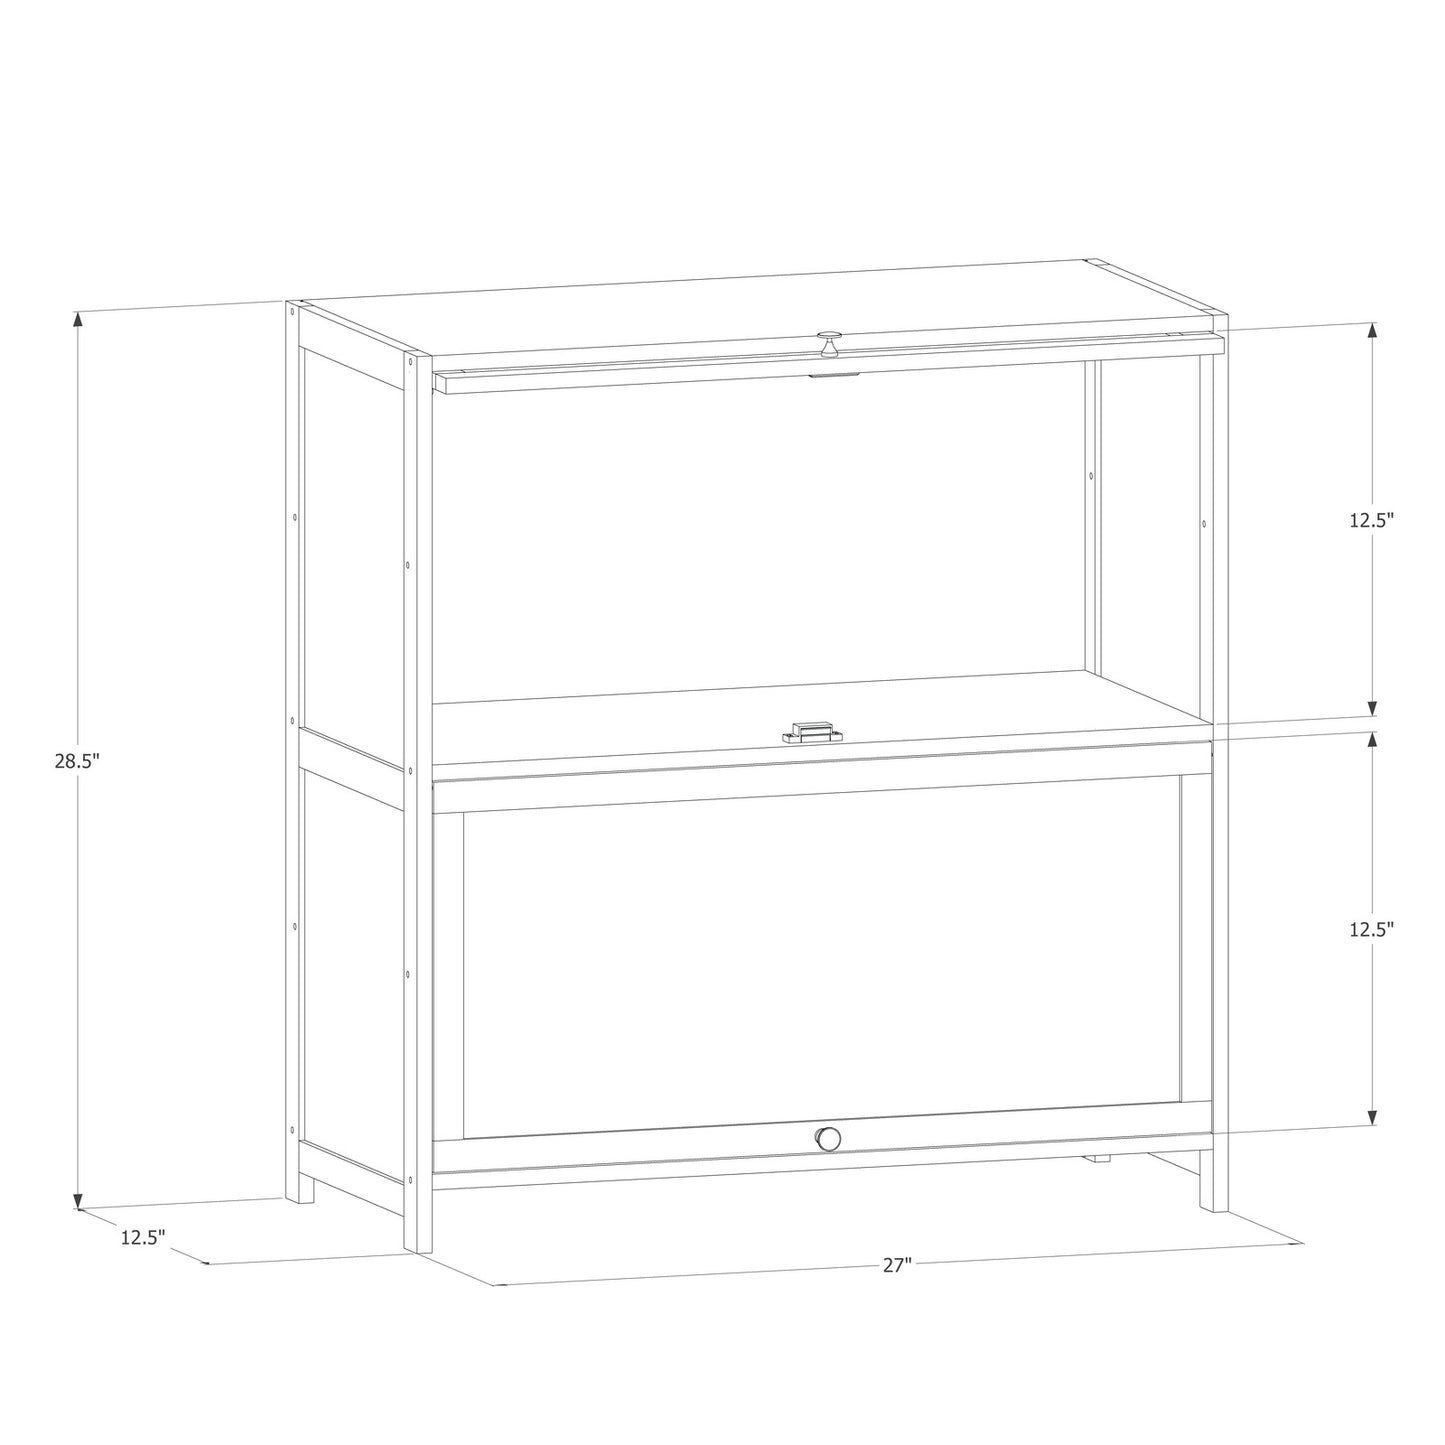 Slide Up Door Multi-Functional Storage Cabinet - 2 Tier - Brown